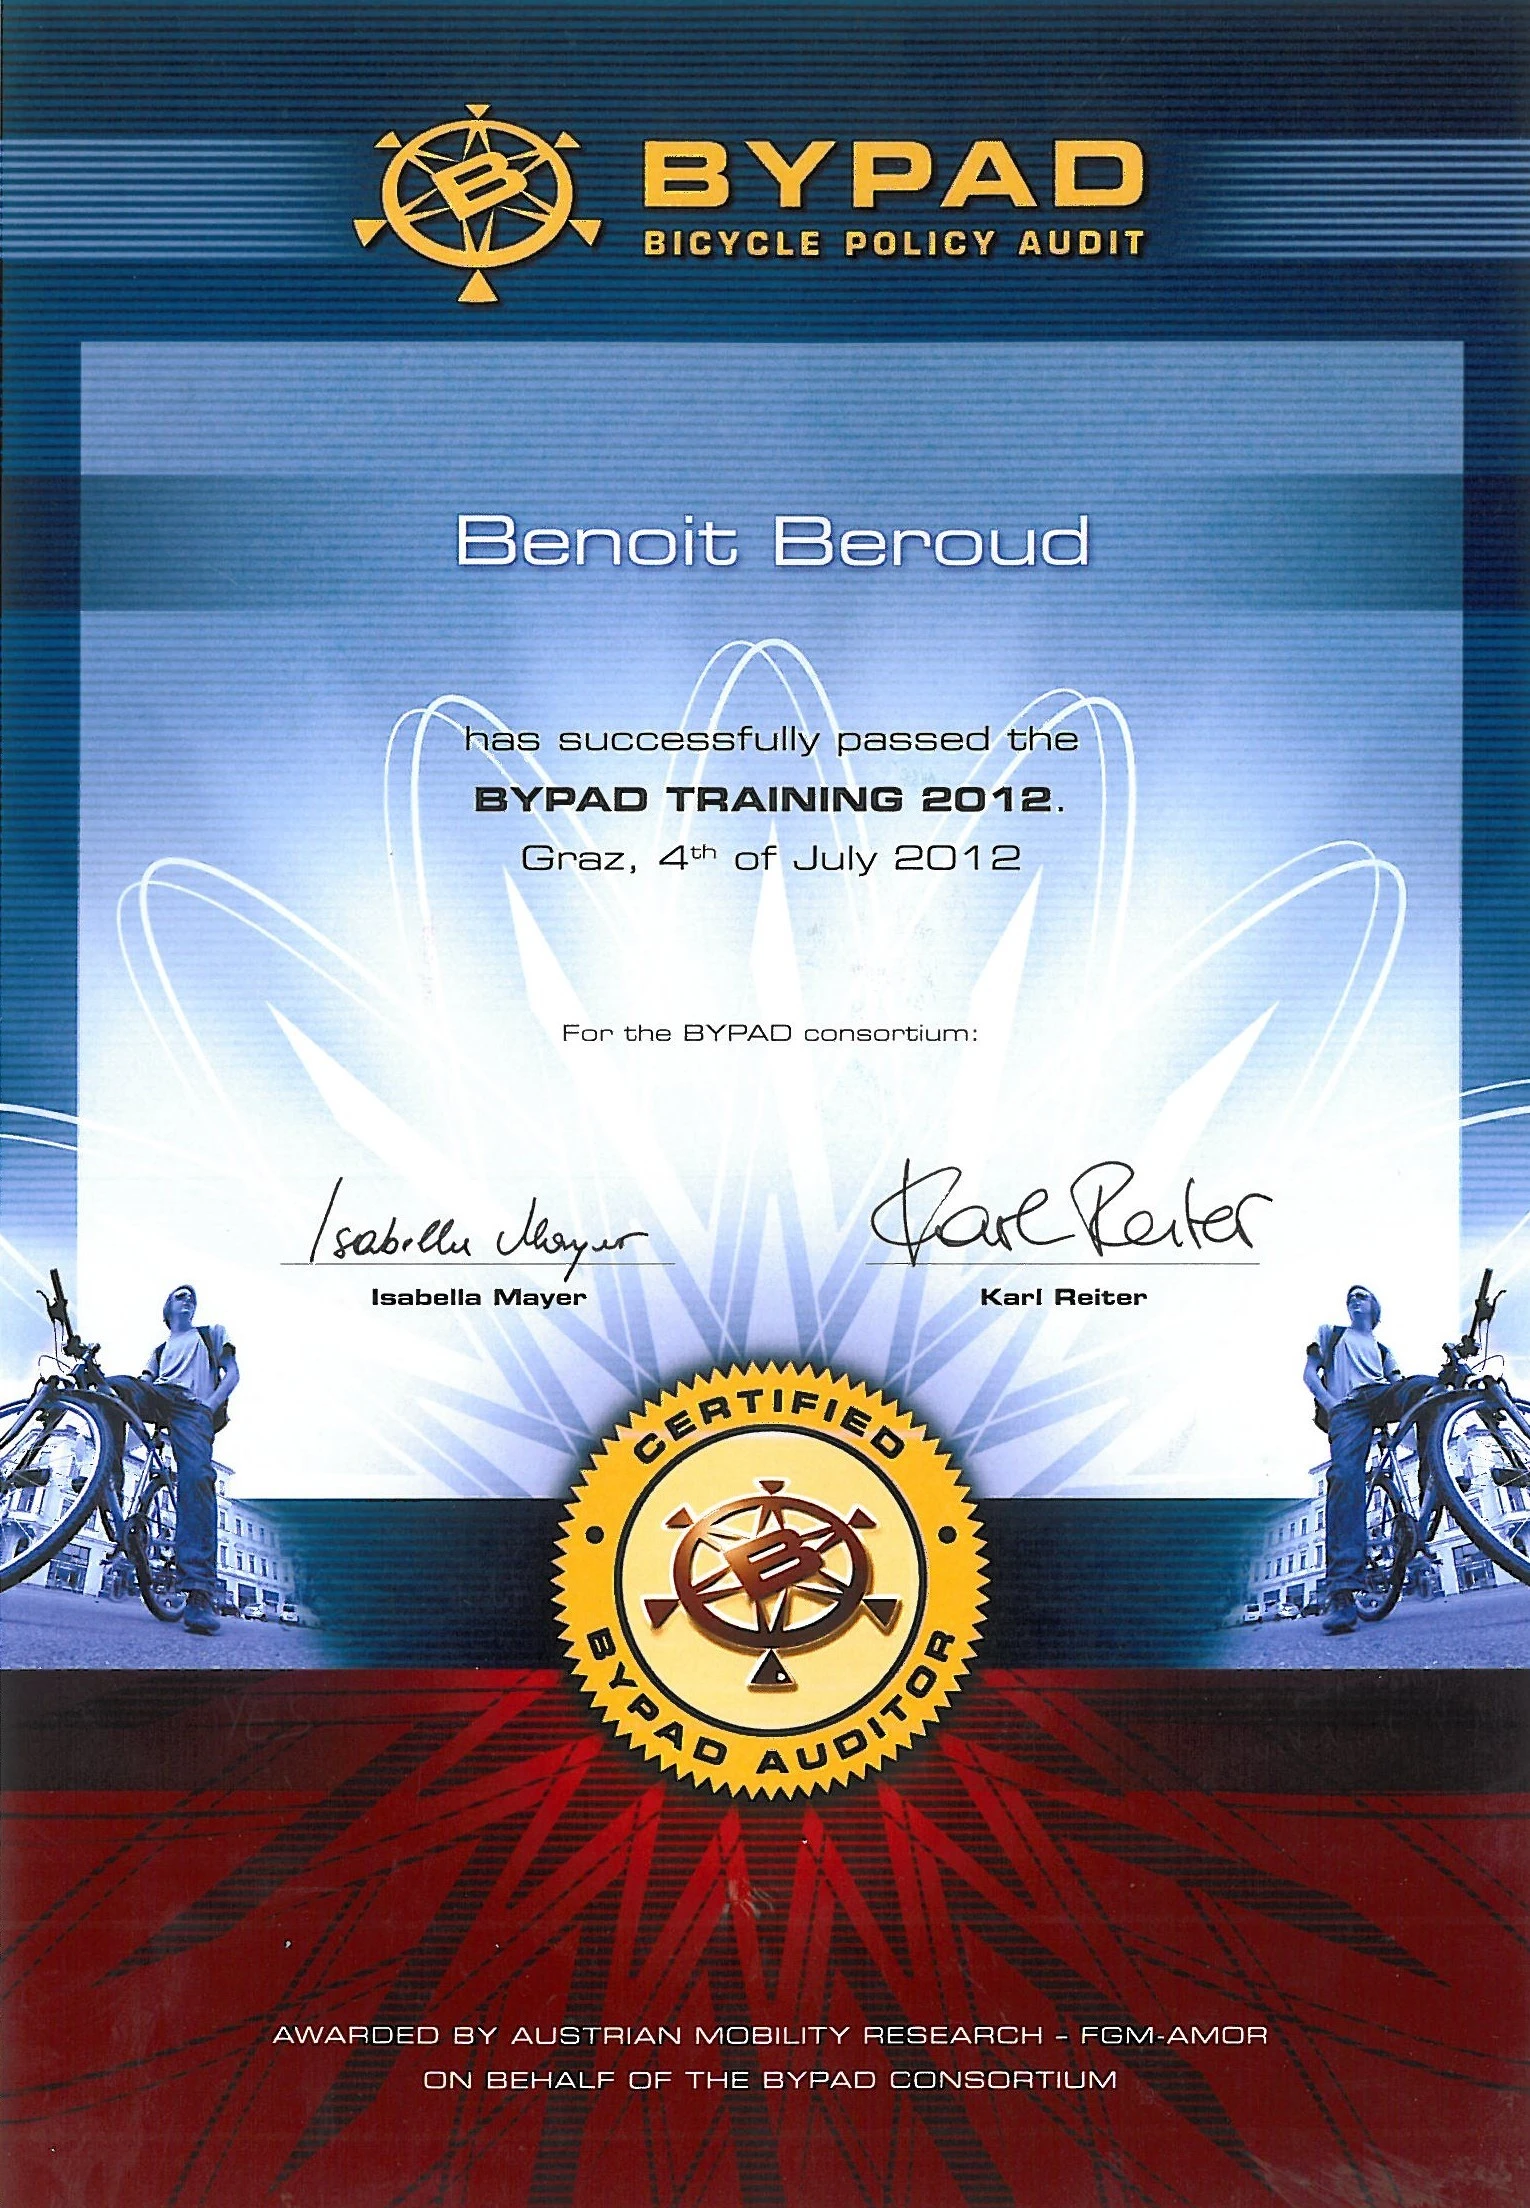 Certificat d'auditeur BYPAD de politique cyclable (FGM AMOR, 2012)